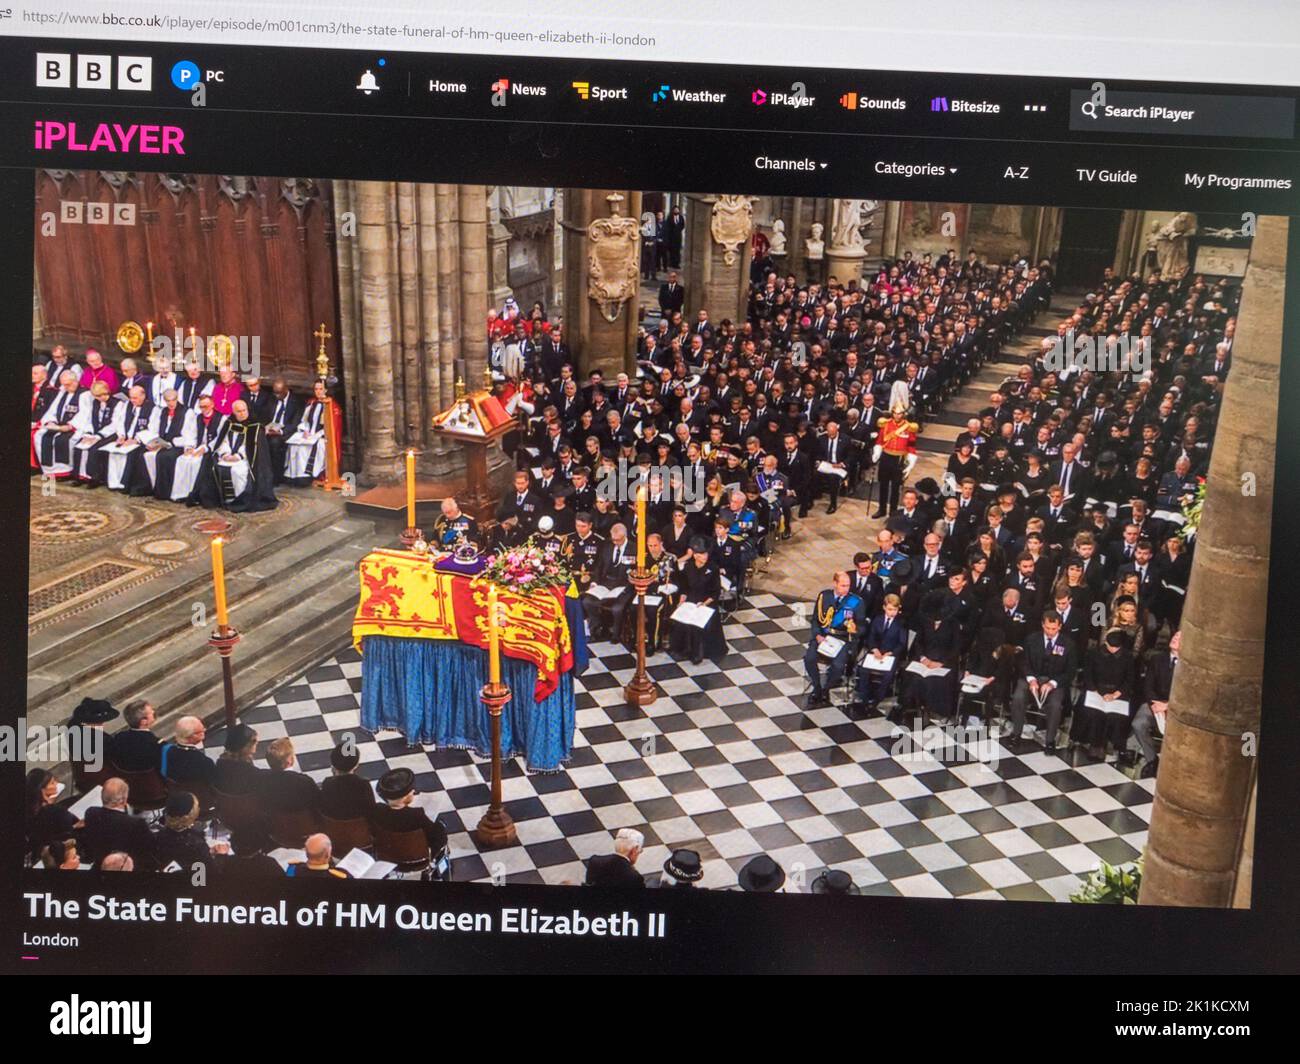 Le site Internet de BBC News (iPlayer) lors des funérailles de la reine Elizabeth II à Londres le 19th septembre 2022. Banque D'Images